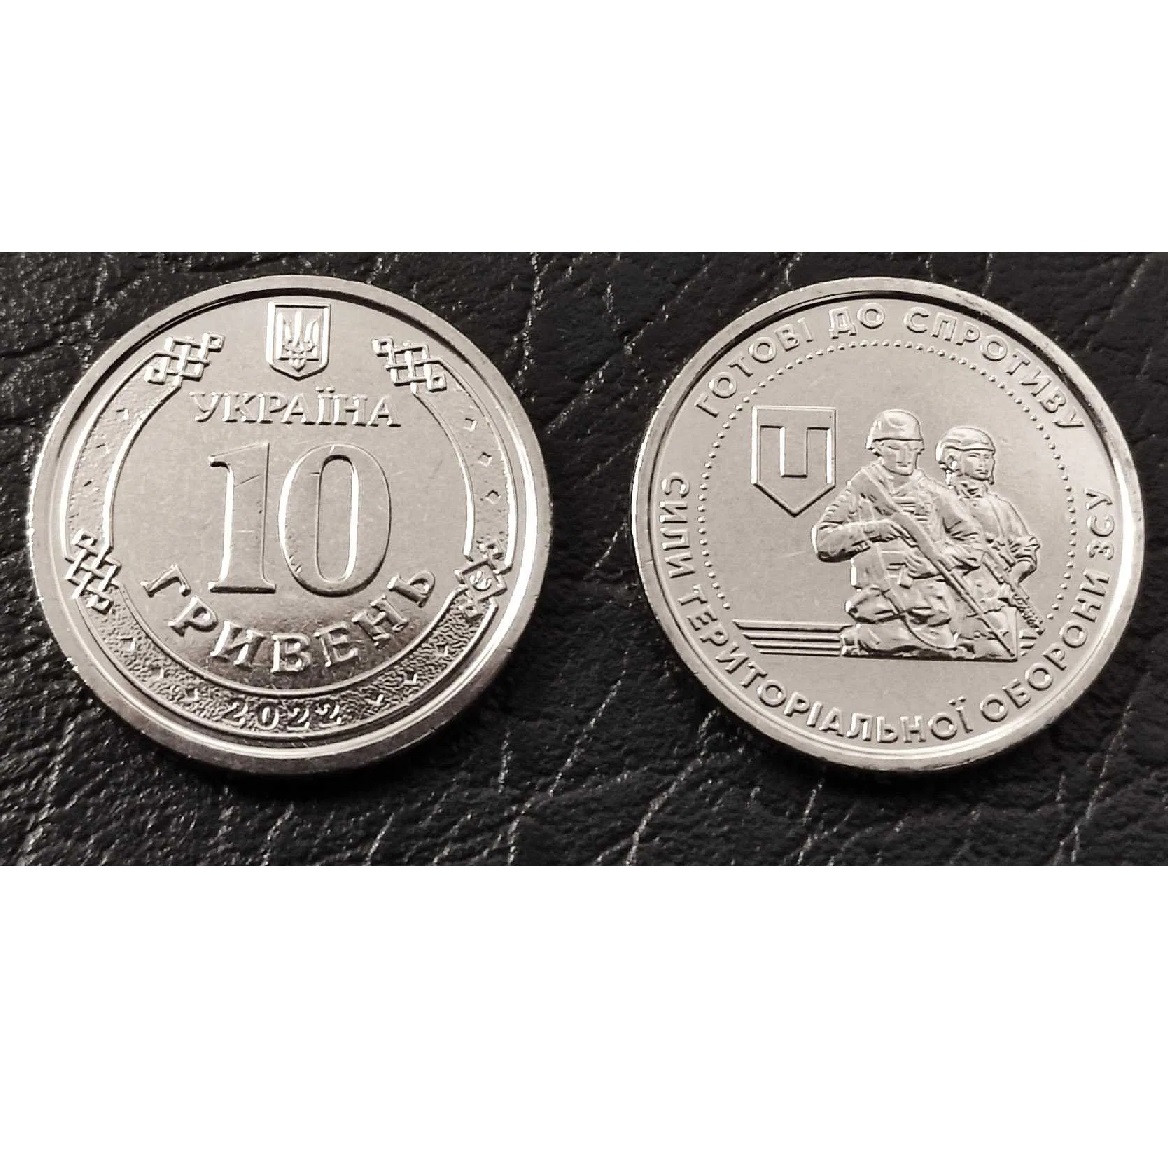 Монета 10 гривен Силы ТрО "Силы территориальной обороны Вооруженных Сил  Украины" (ID#1708656732), цена: 25 ₴, купить на Prom.ua